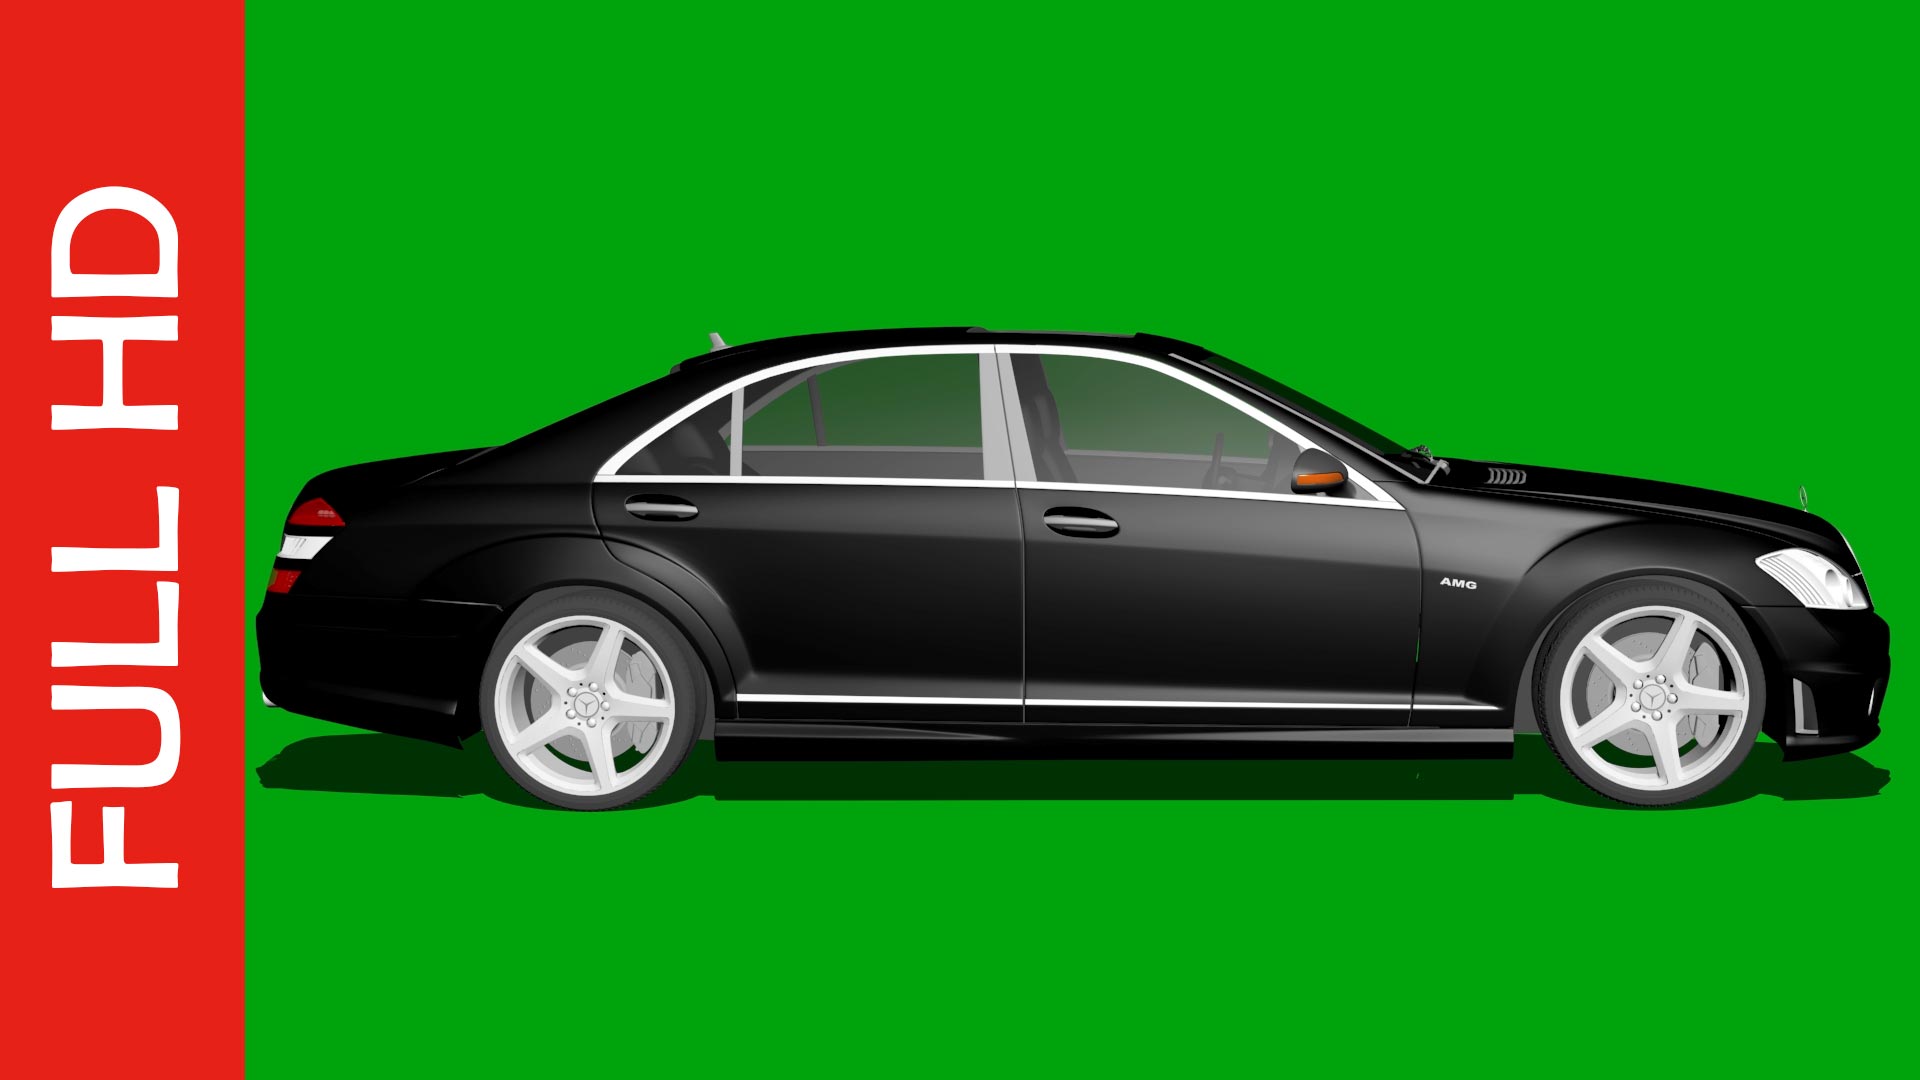 Hiệu ứng màn hình xanh xe hơi sẽ khiến cho những bức ảnh ô tô của bạn trở nên sống động và chân thực hơn. Sử dụng các hiệu ứng màn hình xanh để biến những bức ảnh của bạn thành những tác phẩm nghệ thuật độc đáo.